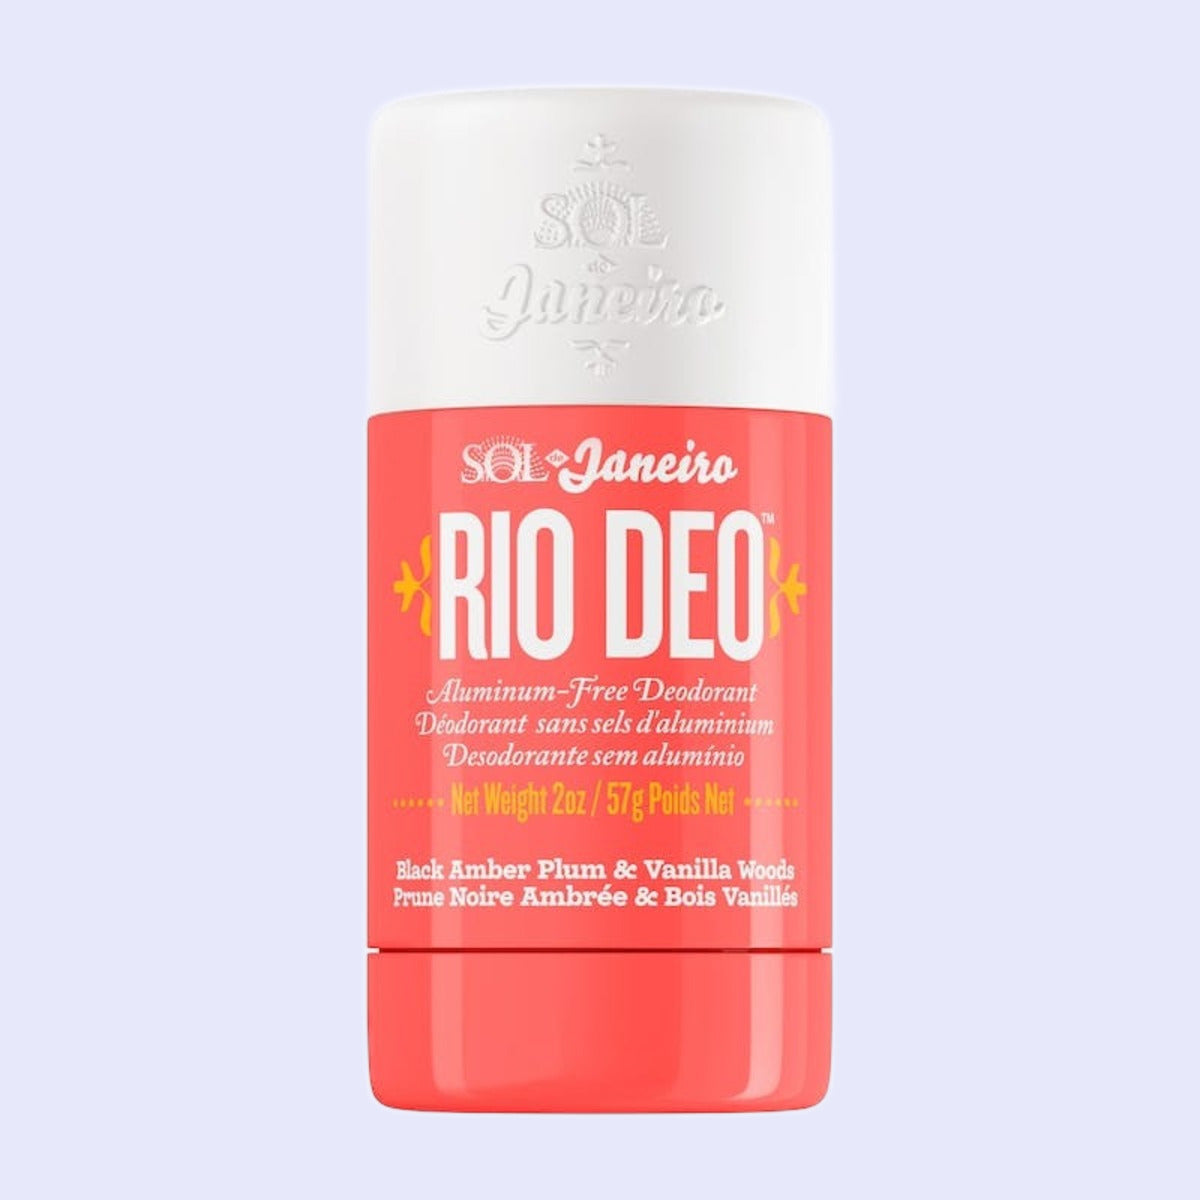 Sol De Janeiro- Rio Deo Aluminum-Free Deodorant Cheirosa 40